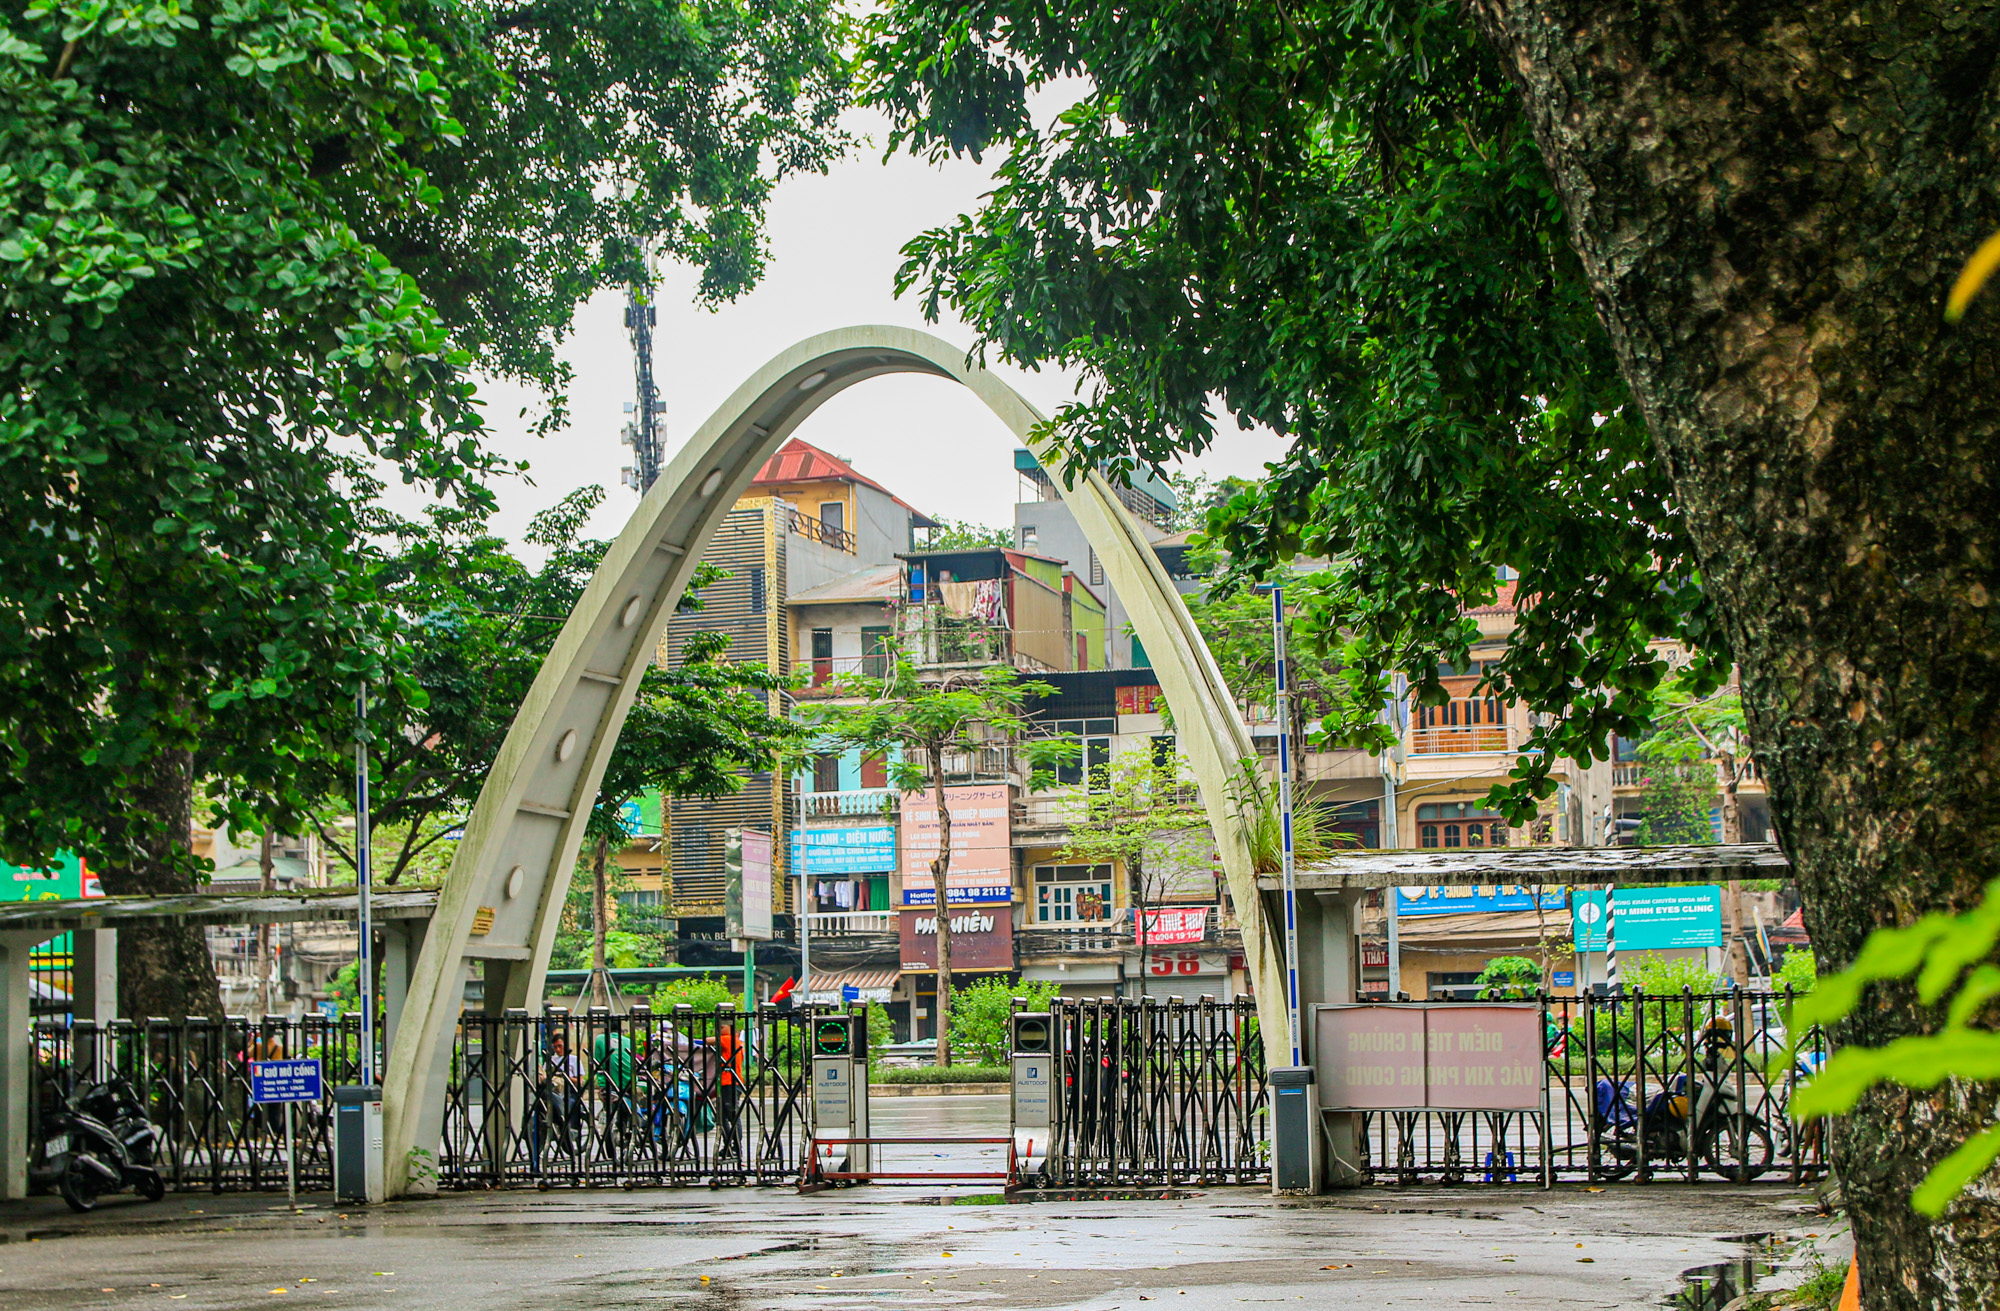 Trường đại học rộng nhất trung tâm Hà Nội, sinh viên phải tra bản đồ để tìm đường - Ảnh 4.